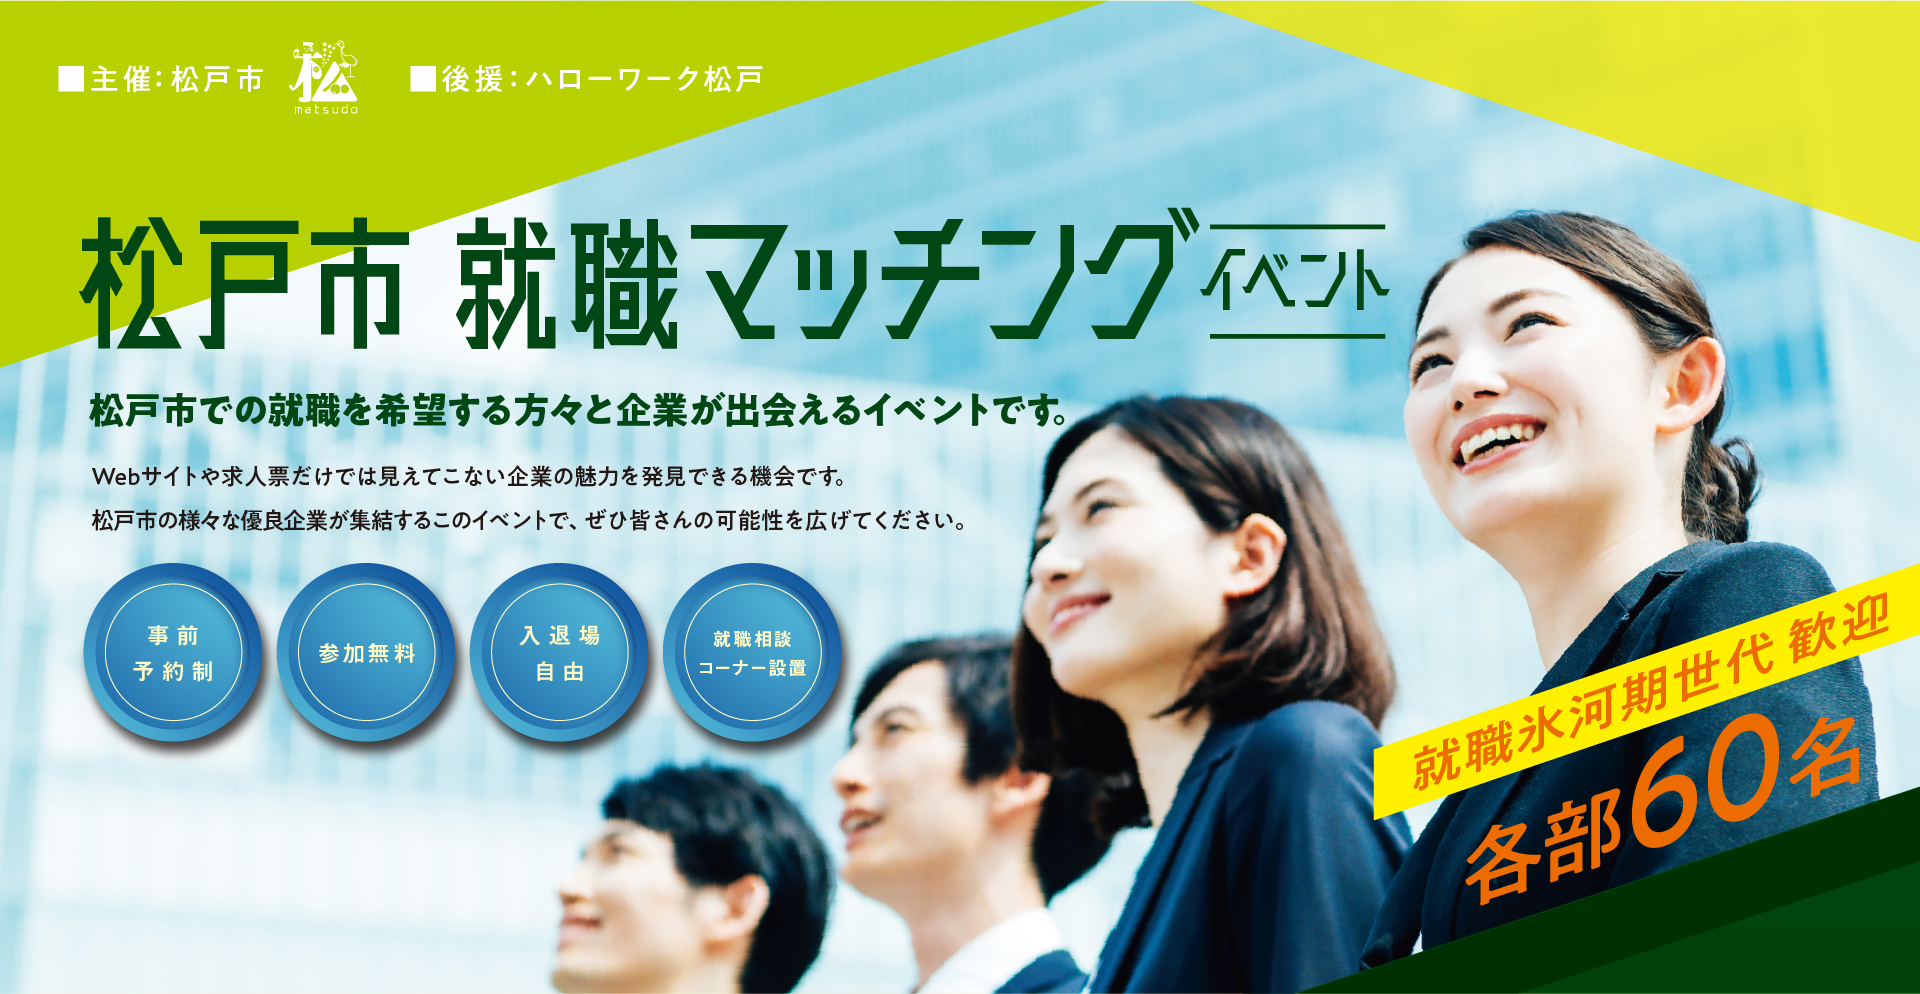 松戸市就職マッチングイベント　松戸市での就職を希望する方々と企業が出会えるイベントです。